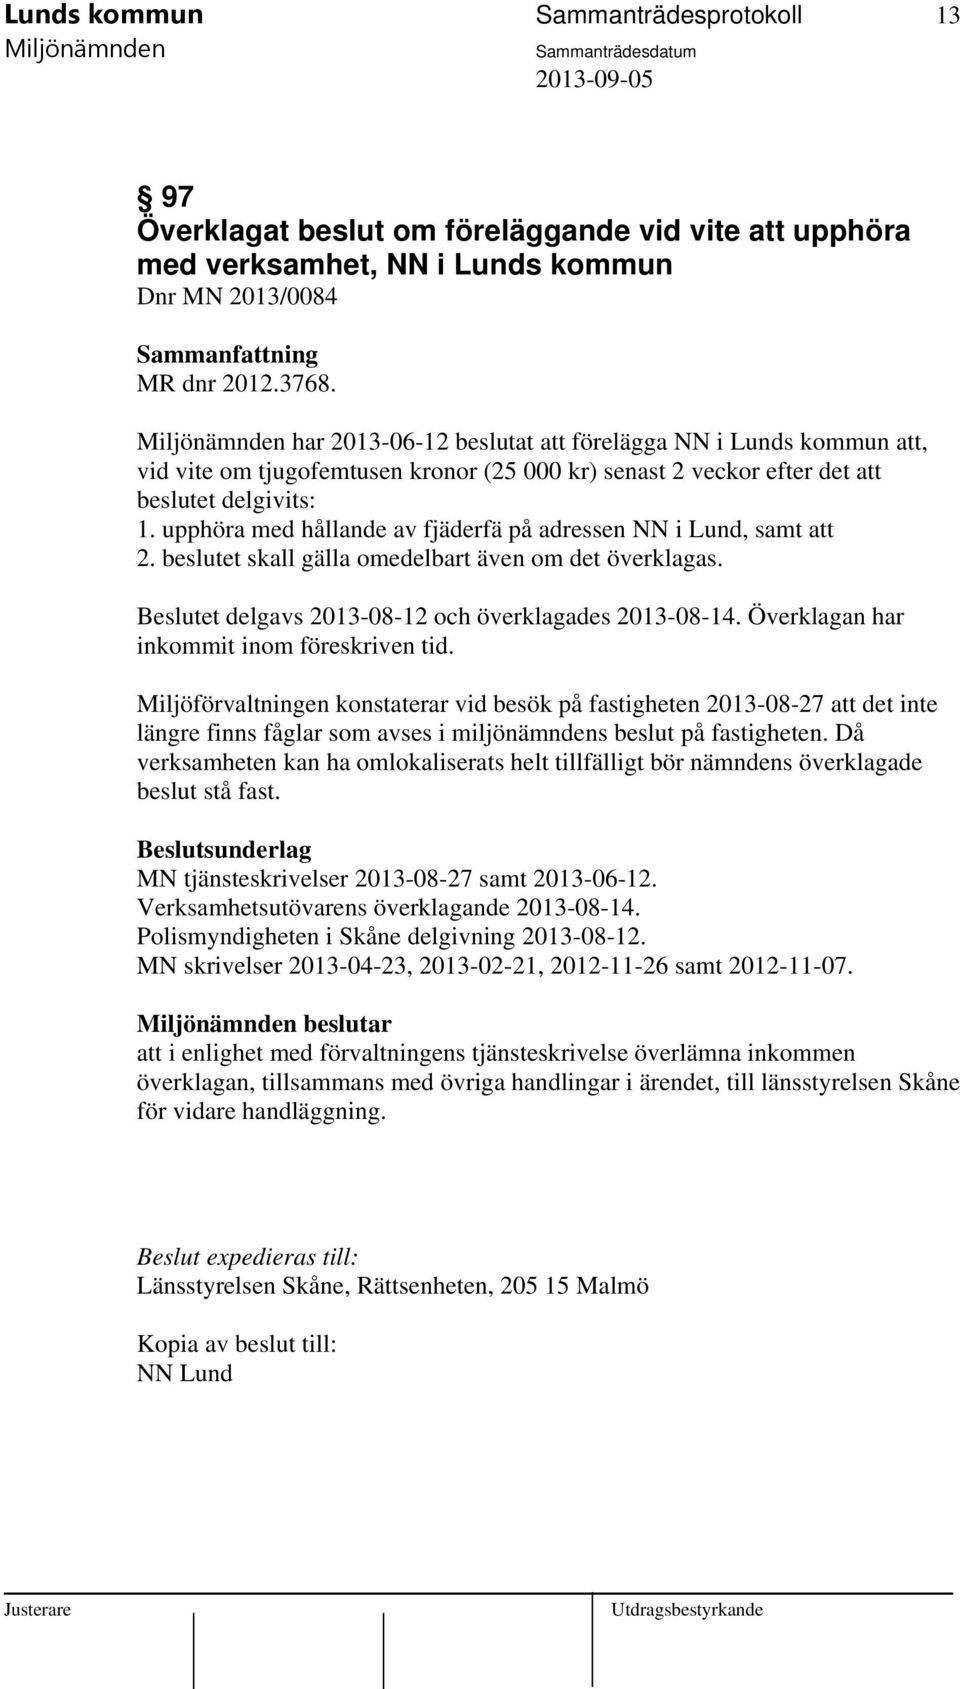 upphöra med hållande av fjäderfä på adressen NN i Lund, samt att 2. beslutet skall gälla omedelbart även om det överklagas. Beslutet delgavs 2013-08-12 och överklagades 2013-08-14.